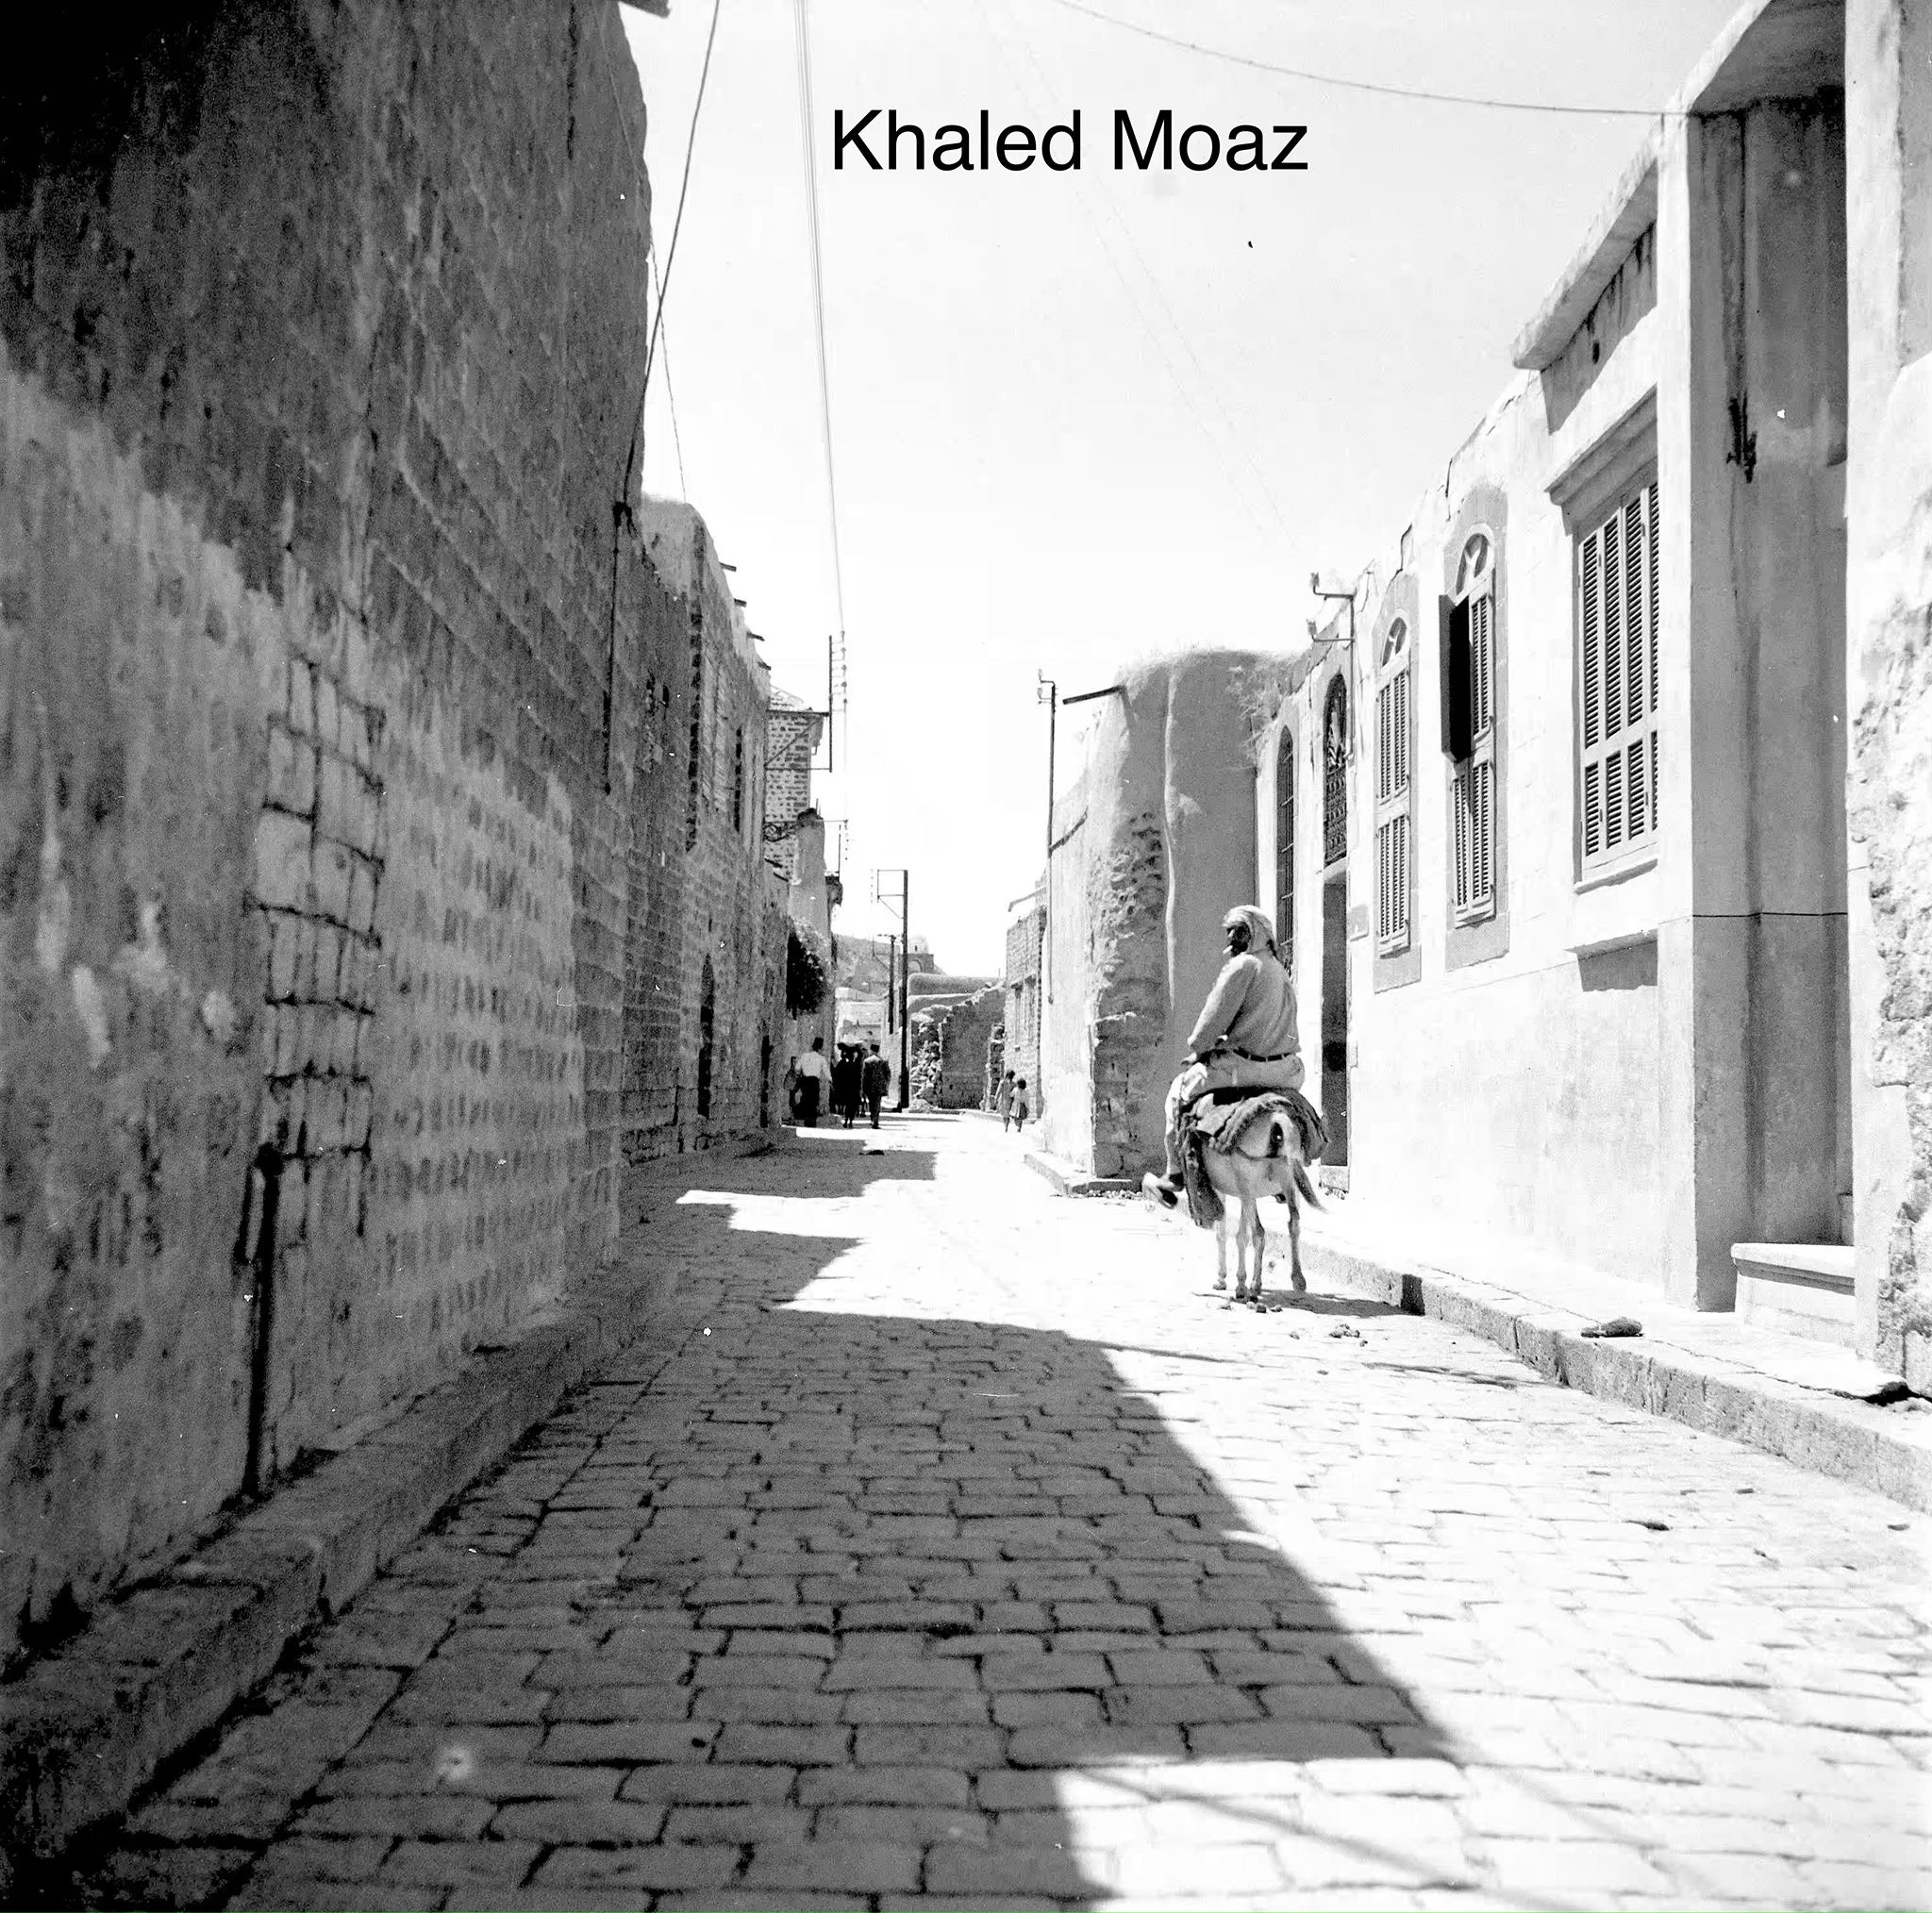 شارع الذهبي - باب هود في حمص في خمسينيات القرن العشرين